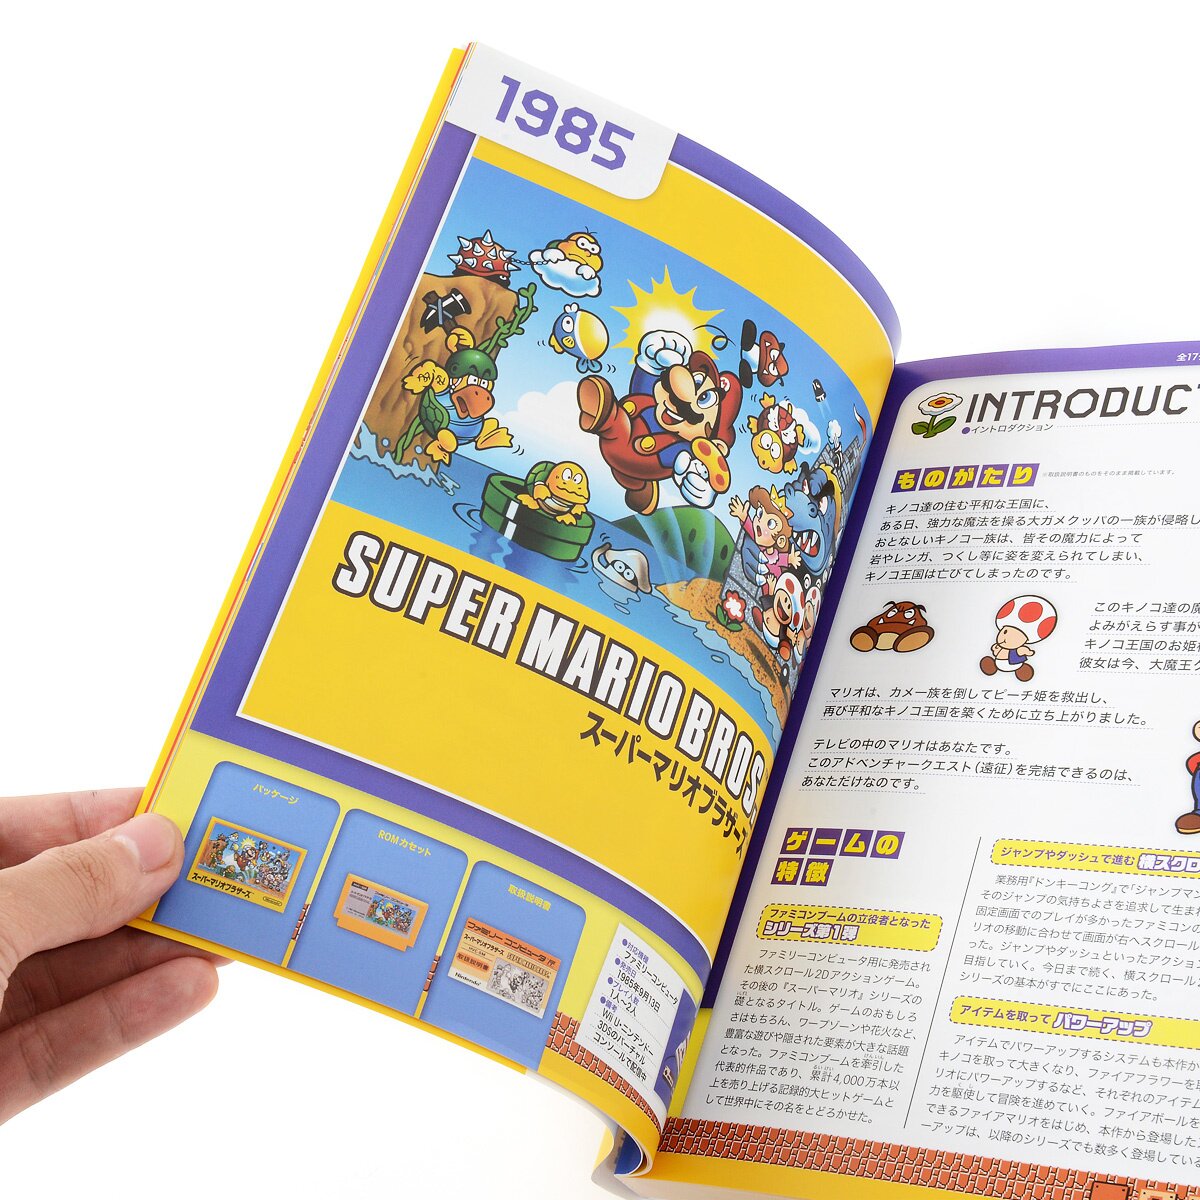 Super Mario Bros. – Wikipédia, a enciclopédia livre